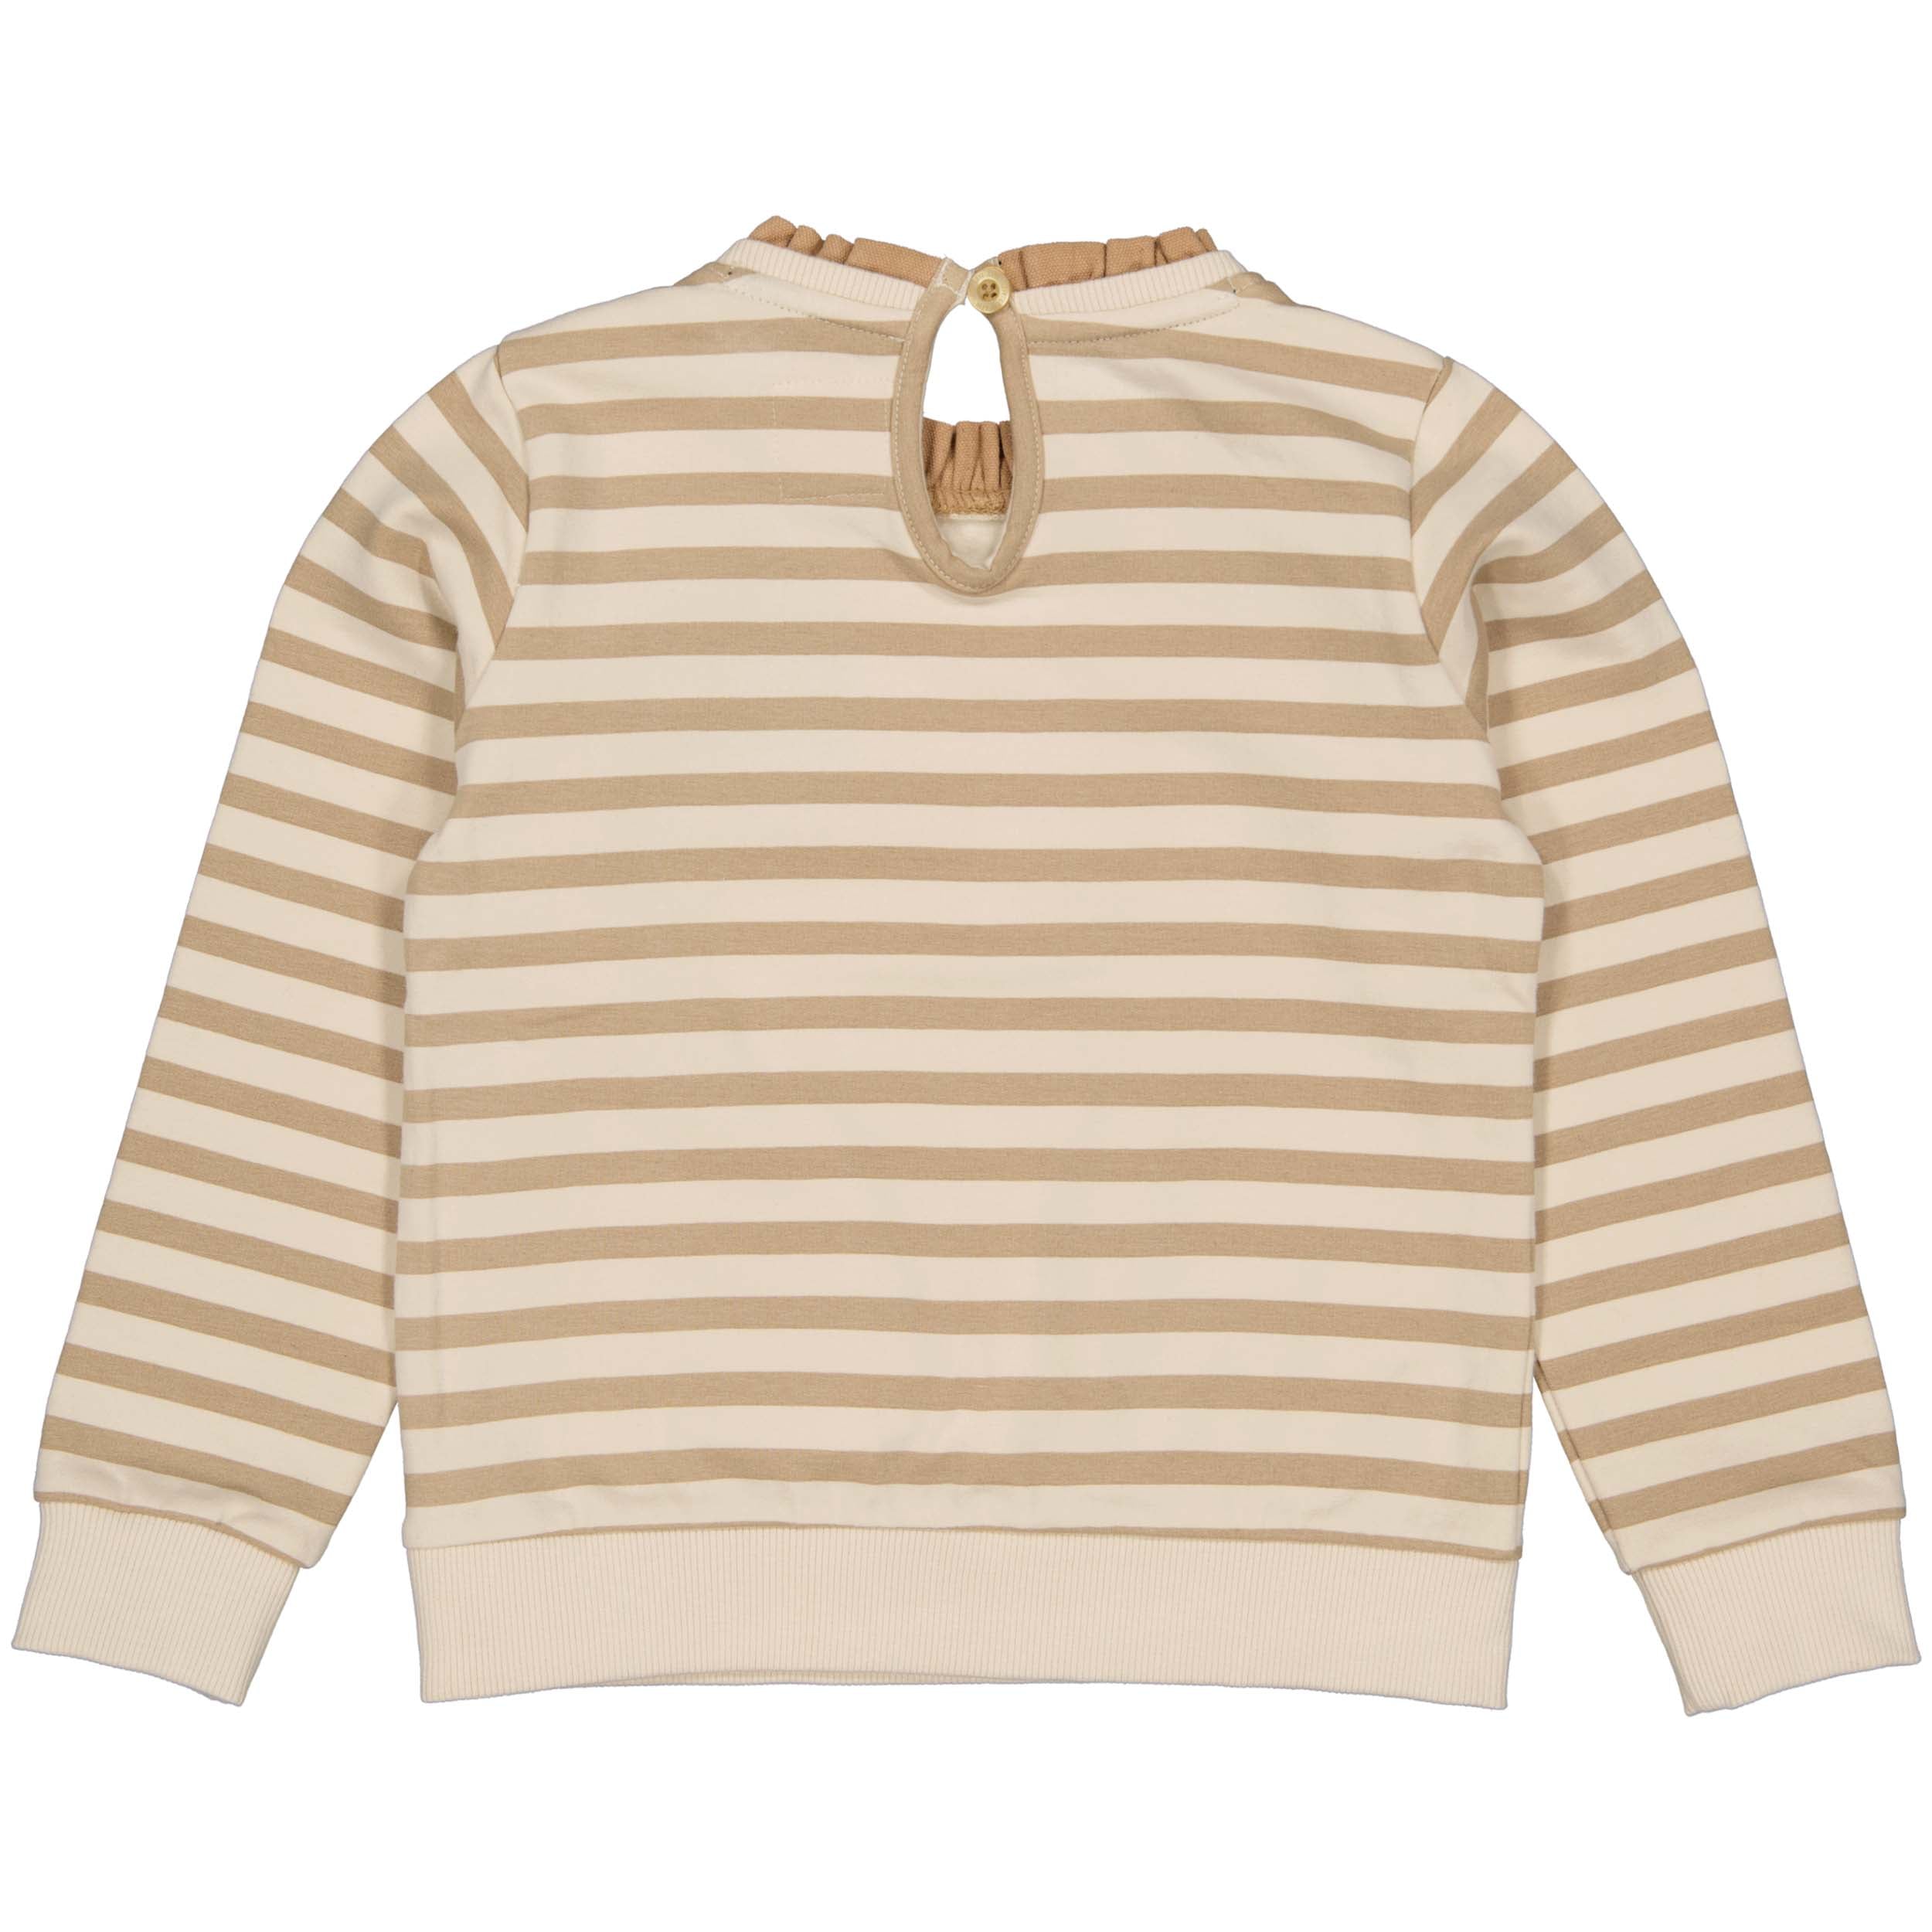 Meisjes Sweater GERLYNNLW231 van Little Levv in de kleur AOP Sand Nomad Stripe in maat 128.